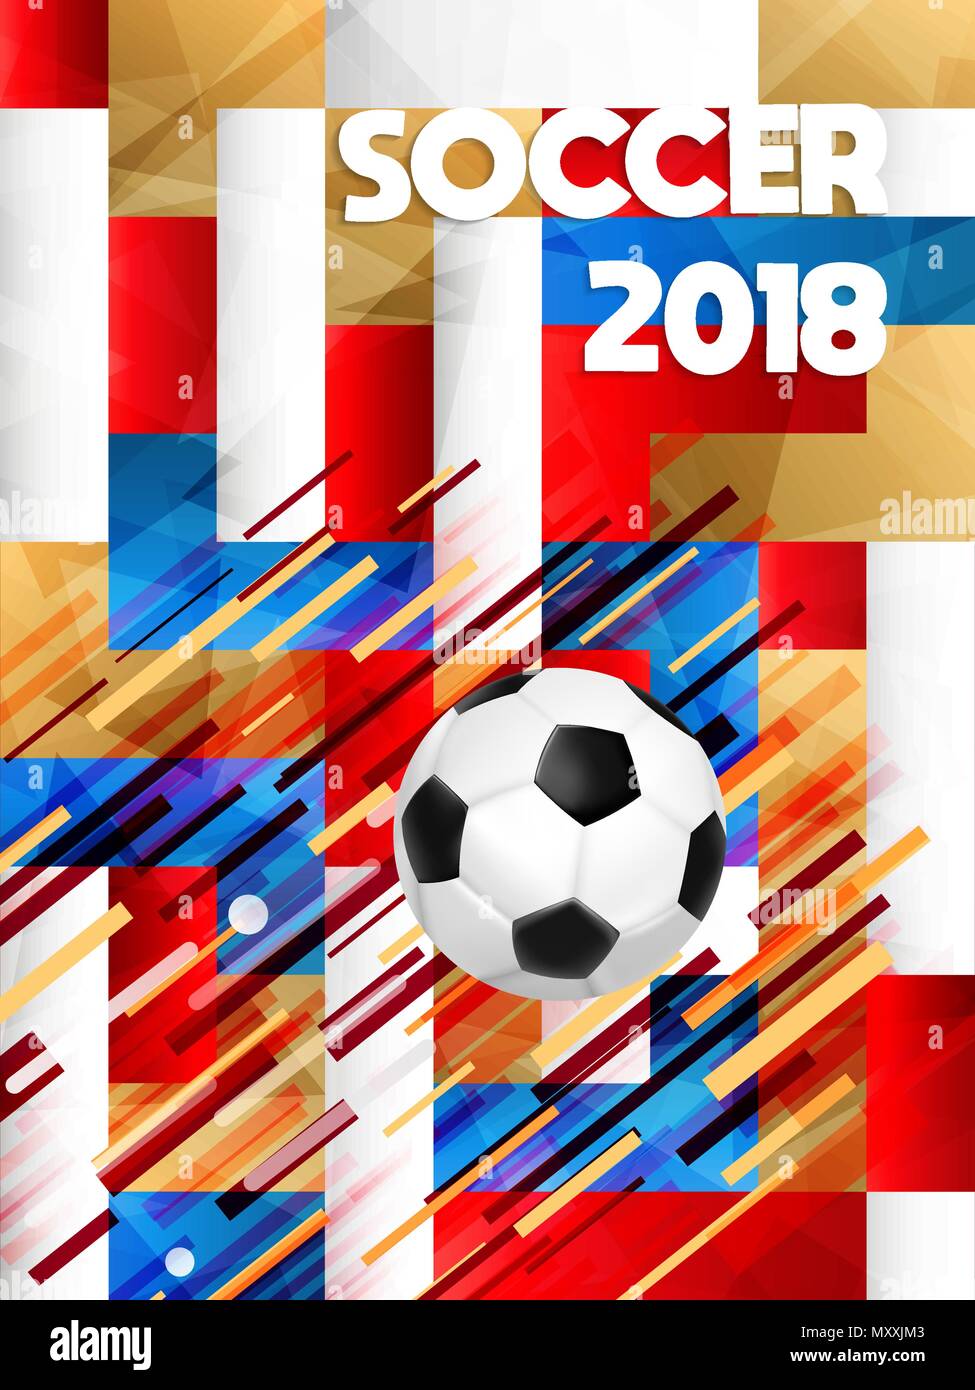 Fussball Poster für Russland Wm 2018 besondere Spiel. Sport Event Abbildung mit realistischen 3D-Fußball-Ball. EPS 10 Vektor. Stock Vektor